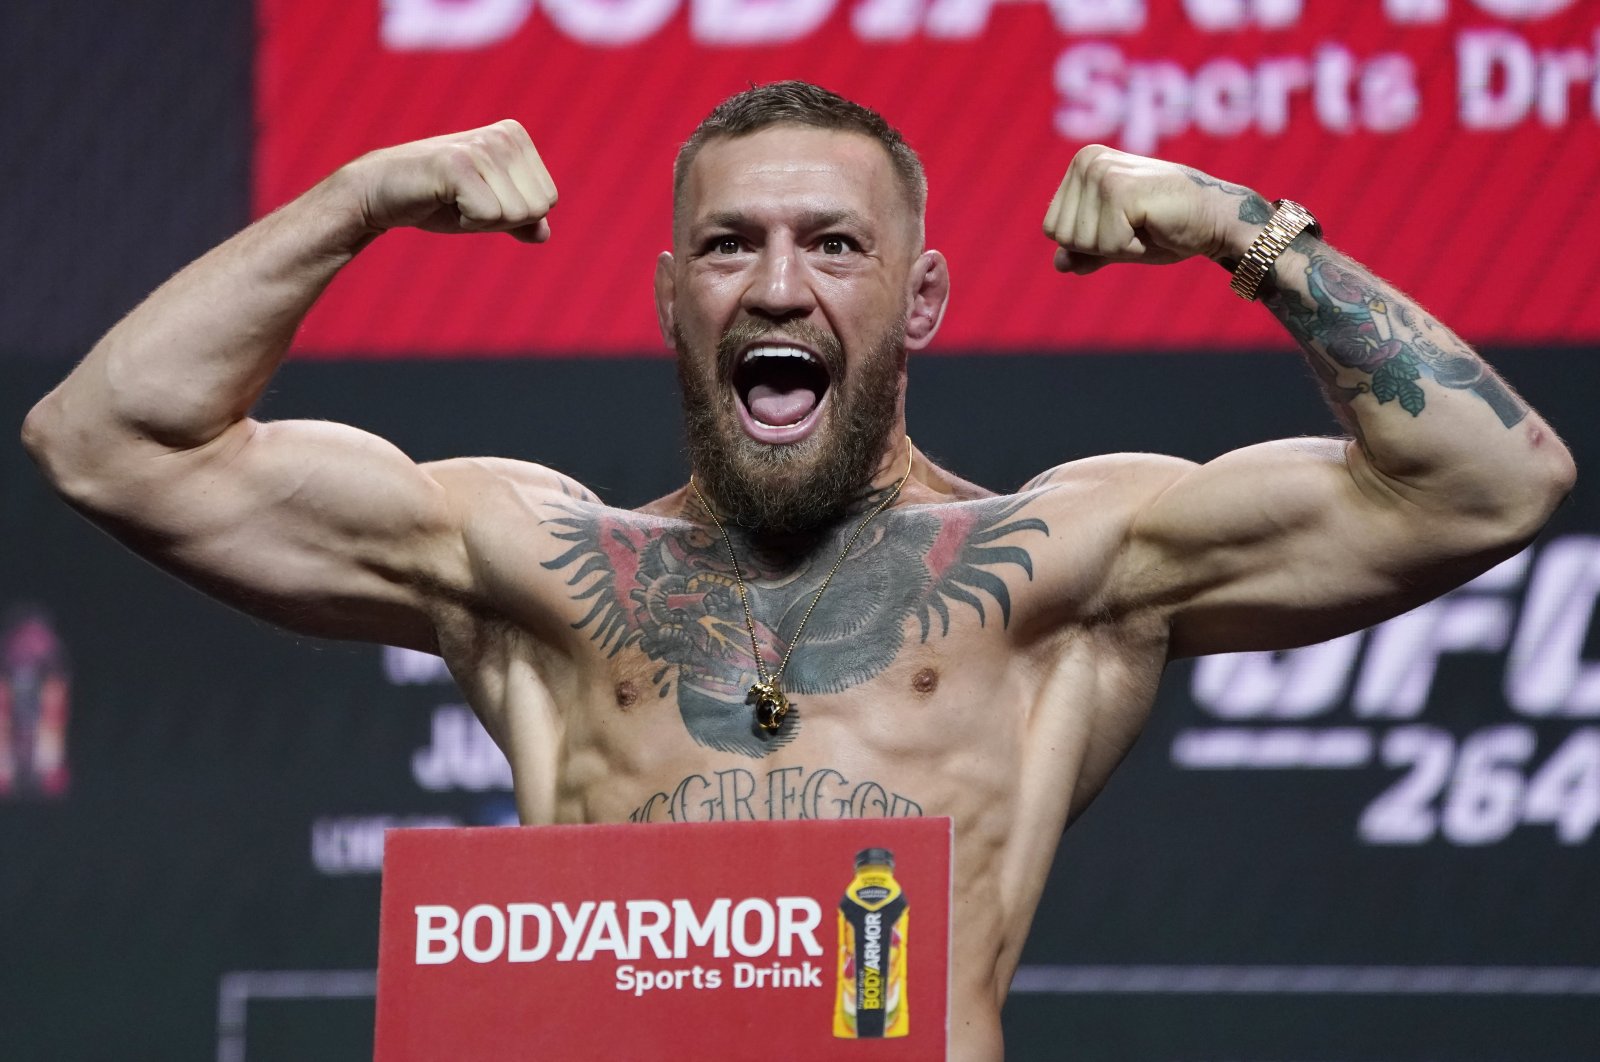 Bintang UFC McGregor memuncaki daftar atlet dengan bayaran tertinggi Forbes untuk tahun 2021